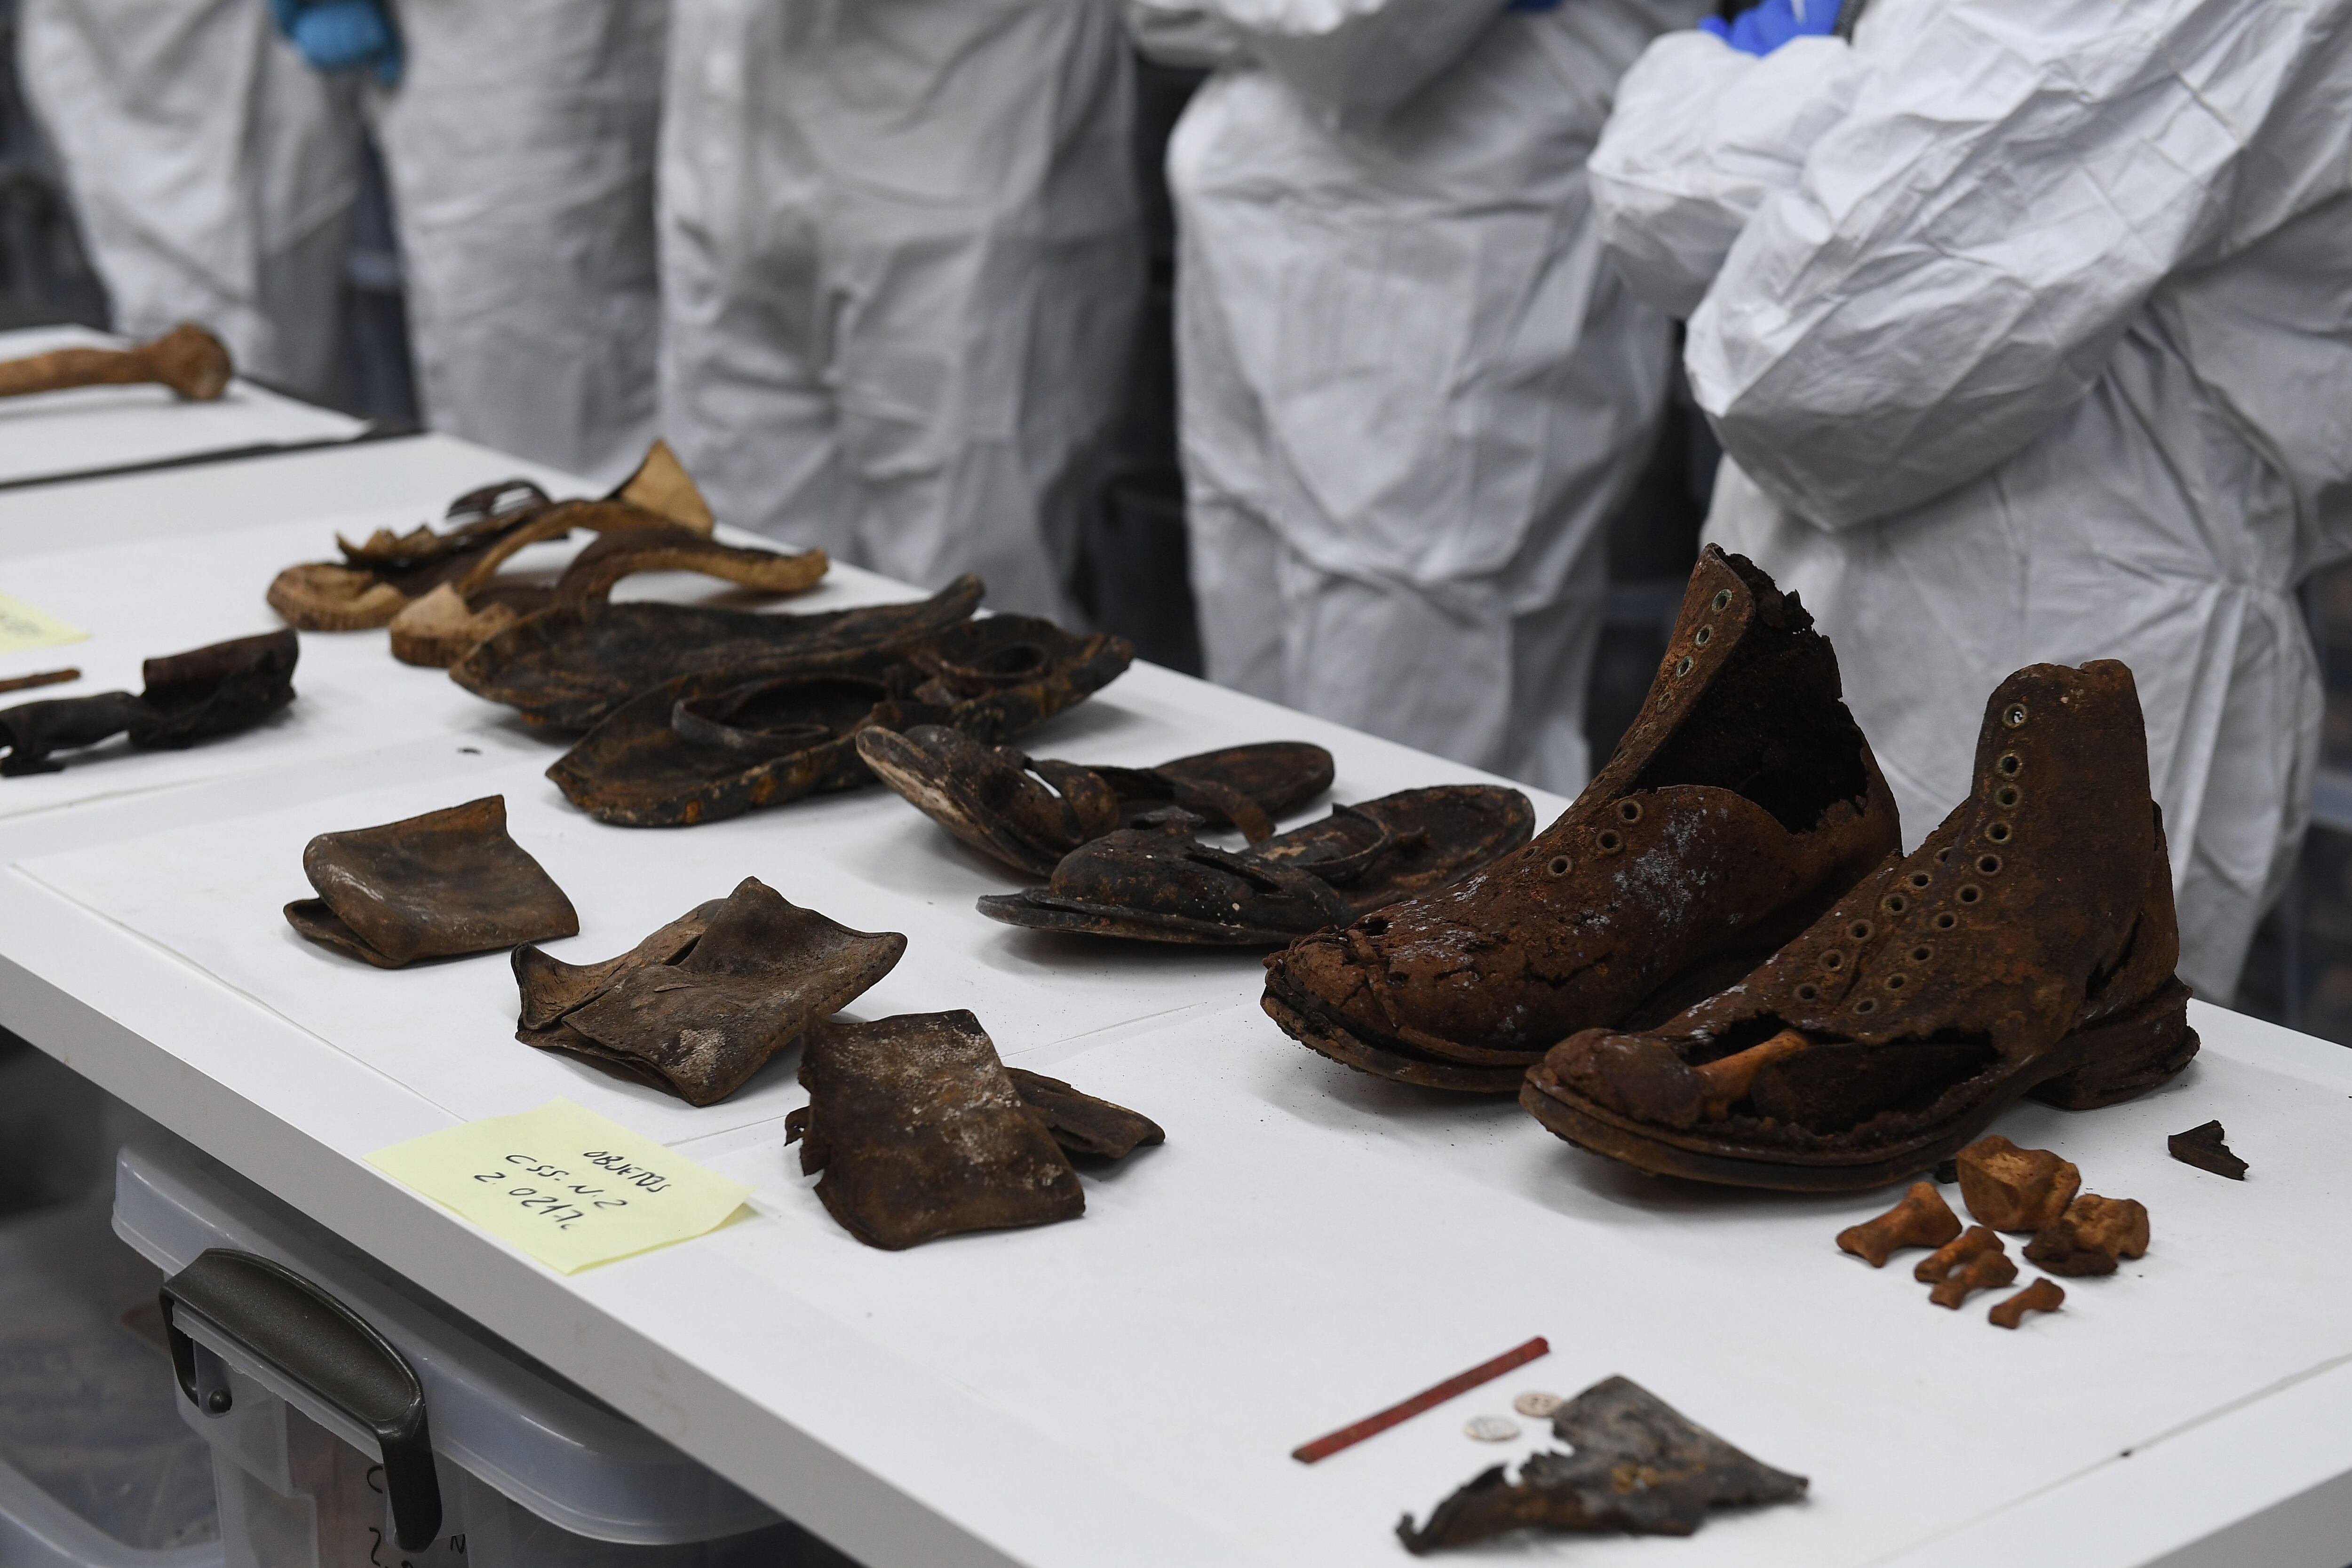 Objetos recuperados por los investigadores en el Valle de Cuelgamuros, en una imagen distribuida por La Moncloa.